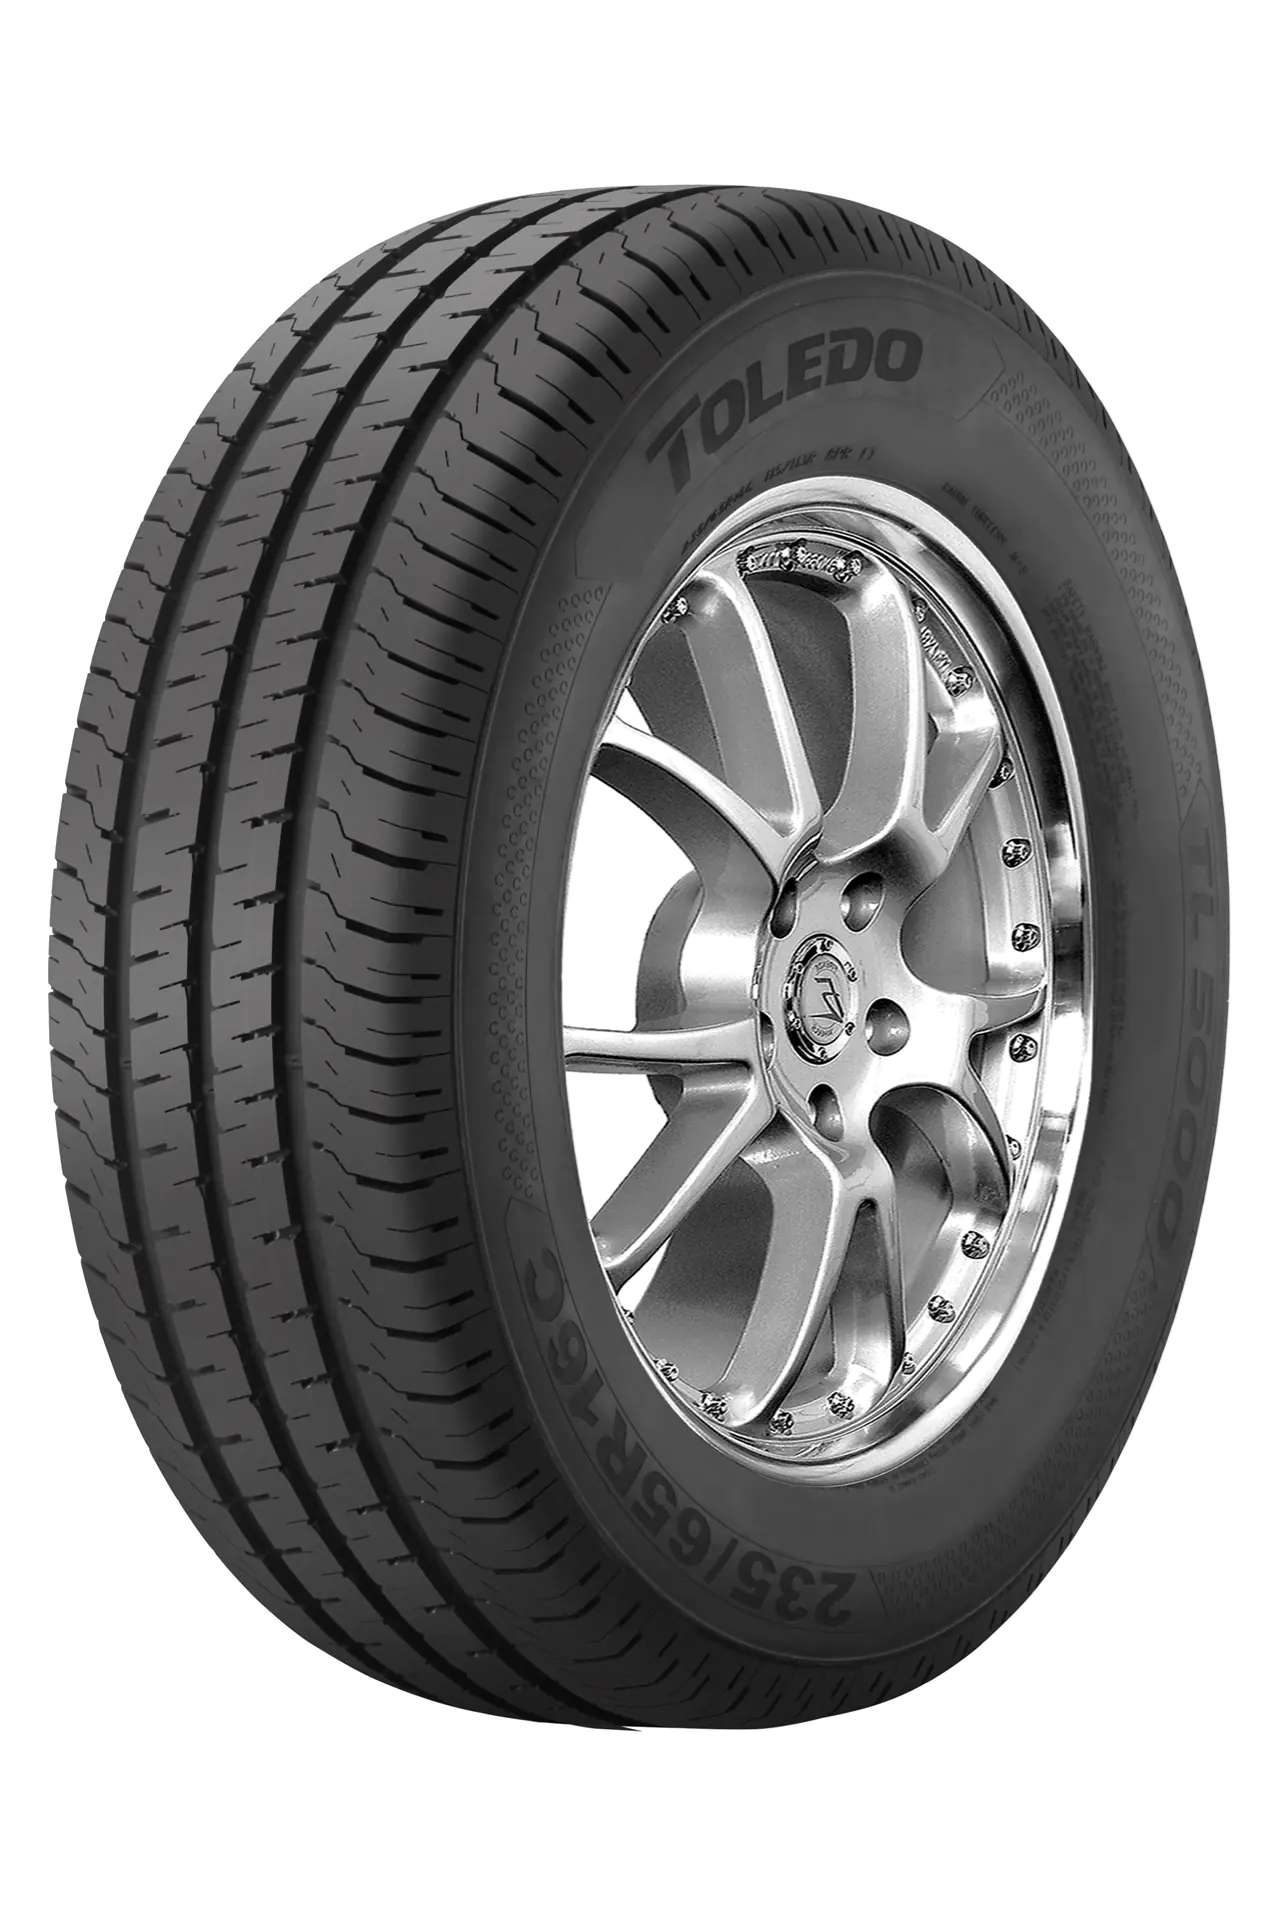 Toledo Toledo 195/75 R16C 107R TL5000 pneumatici nuovi Estivo 